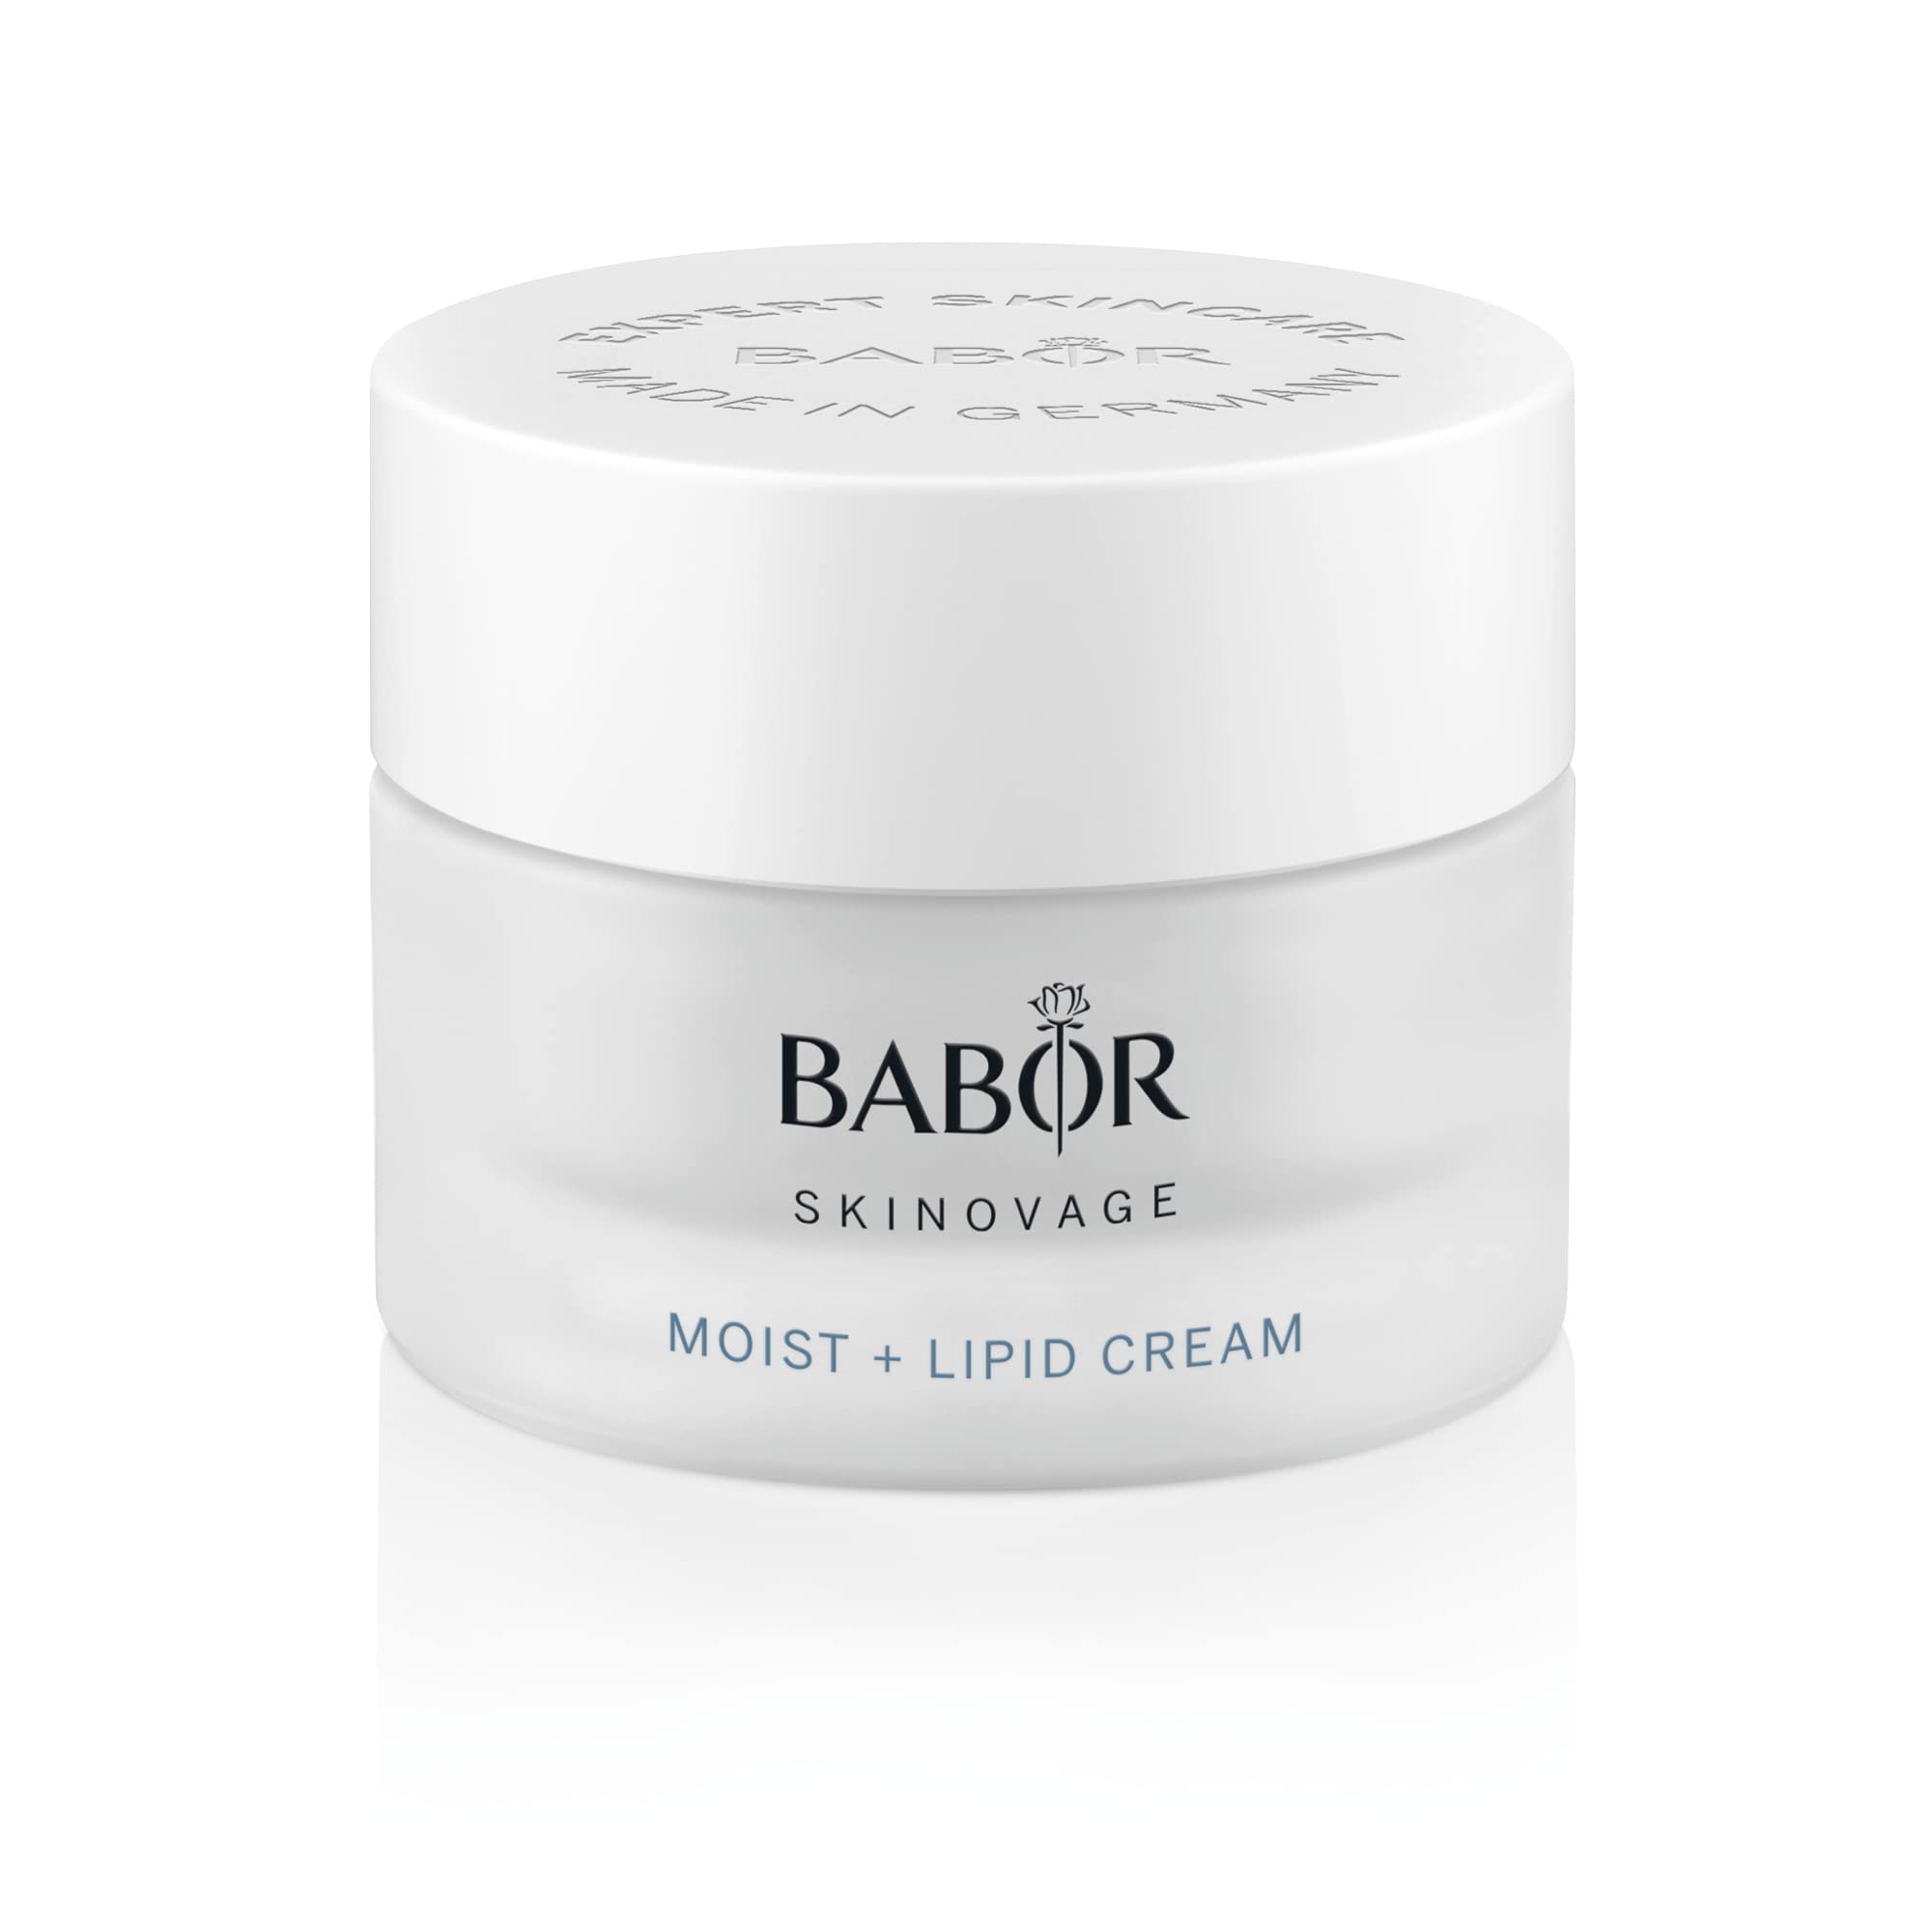 BABOR SKINOVAGE Moist & Lipid Cream, Reichhaltige Gesichtscreme für trockene Haut, Intensive Feuchtigkeitspflege mit Sheabutter, 50 ml